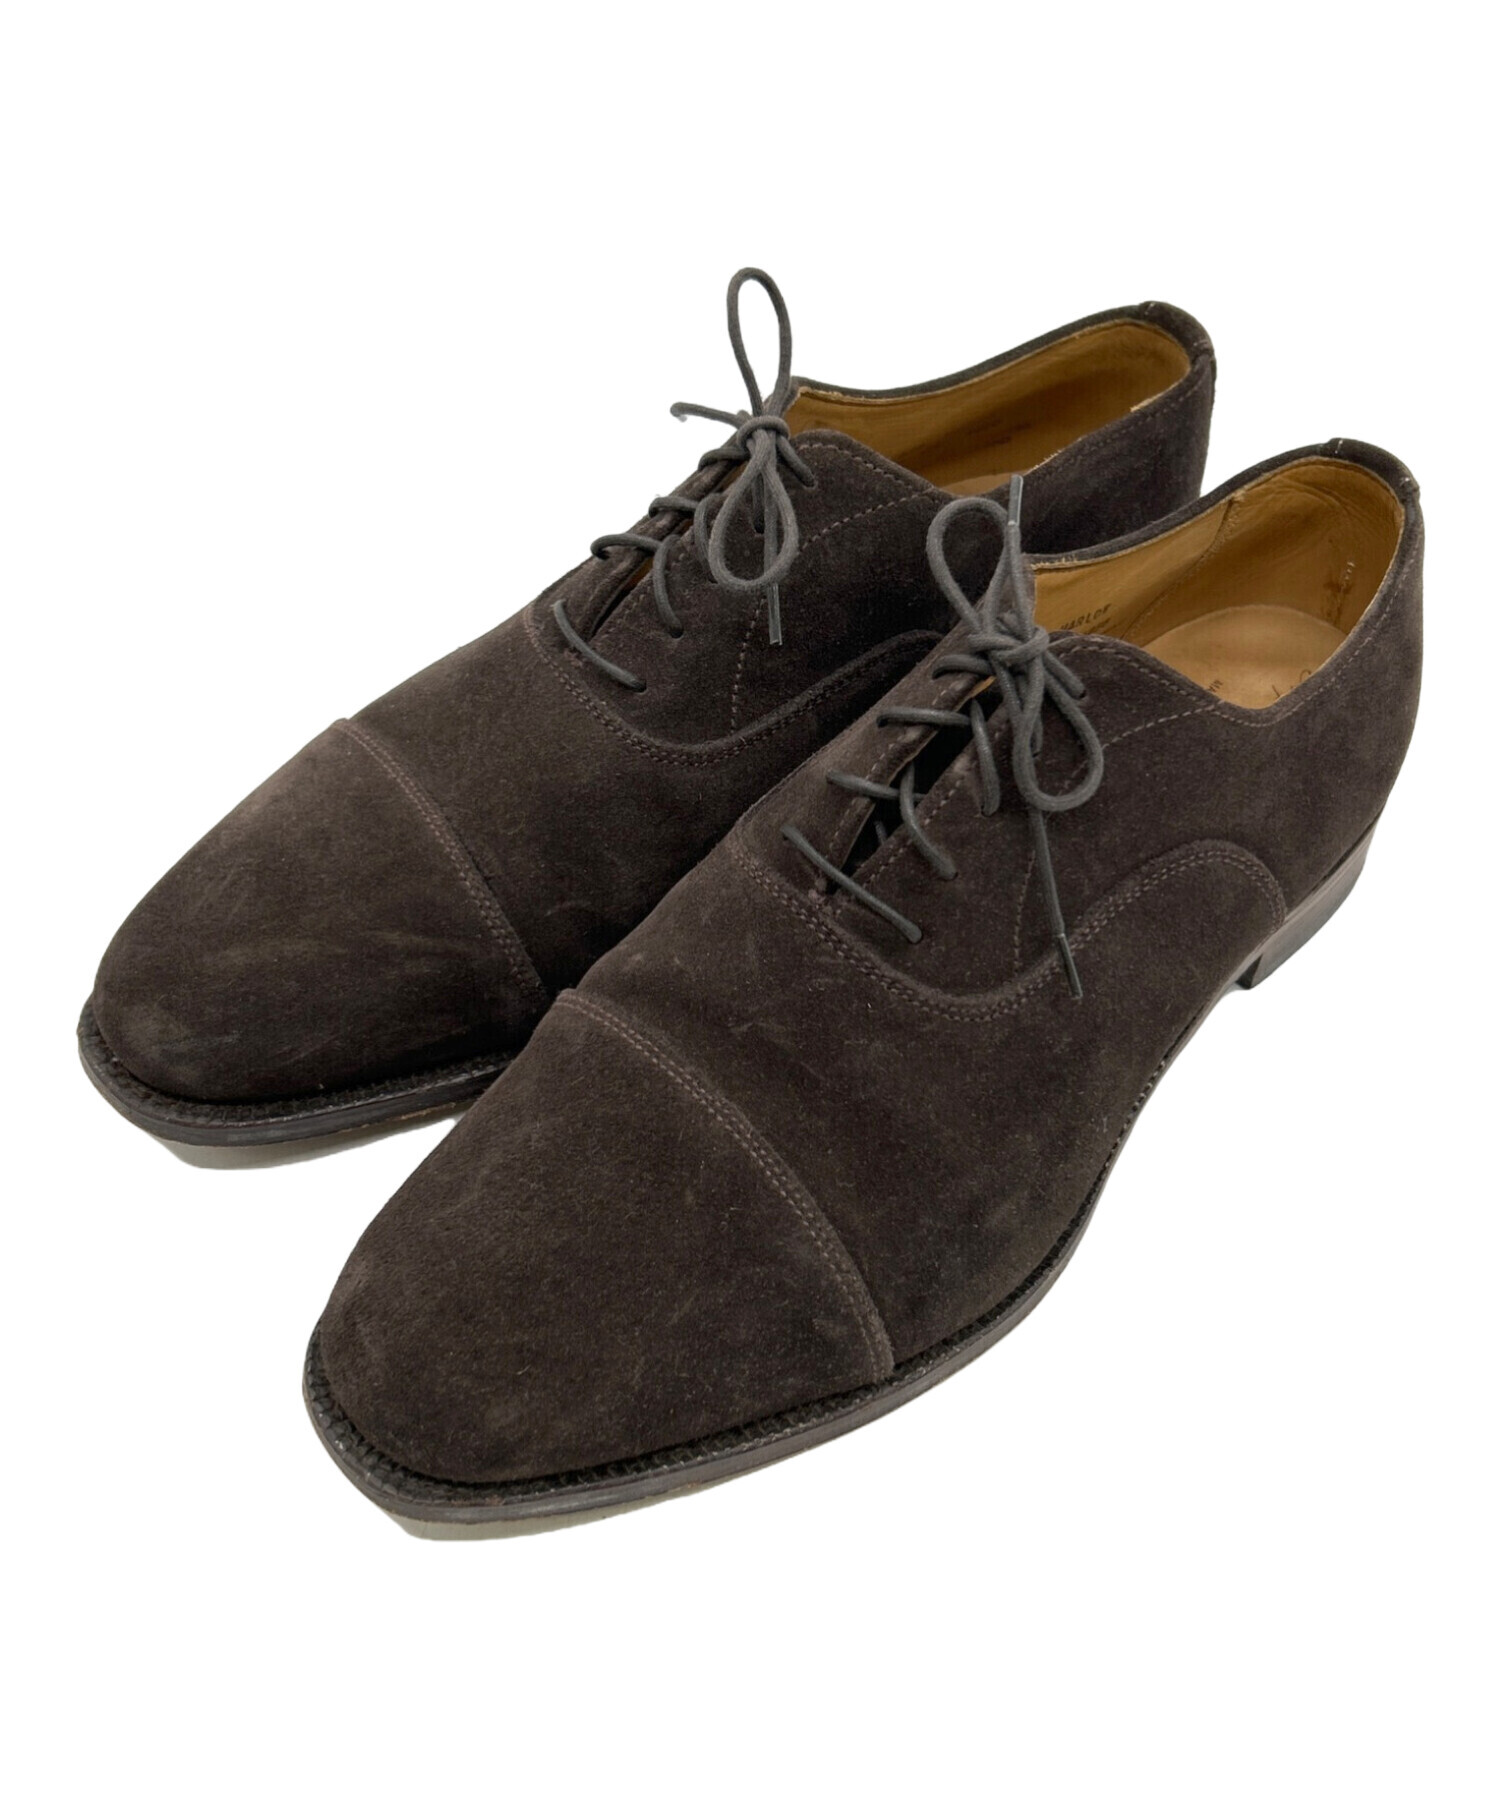 数量限定(シェバ様)Alfred Sargent セミブローグシューズ UK7.5 靴